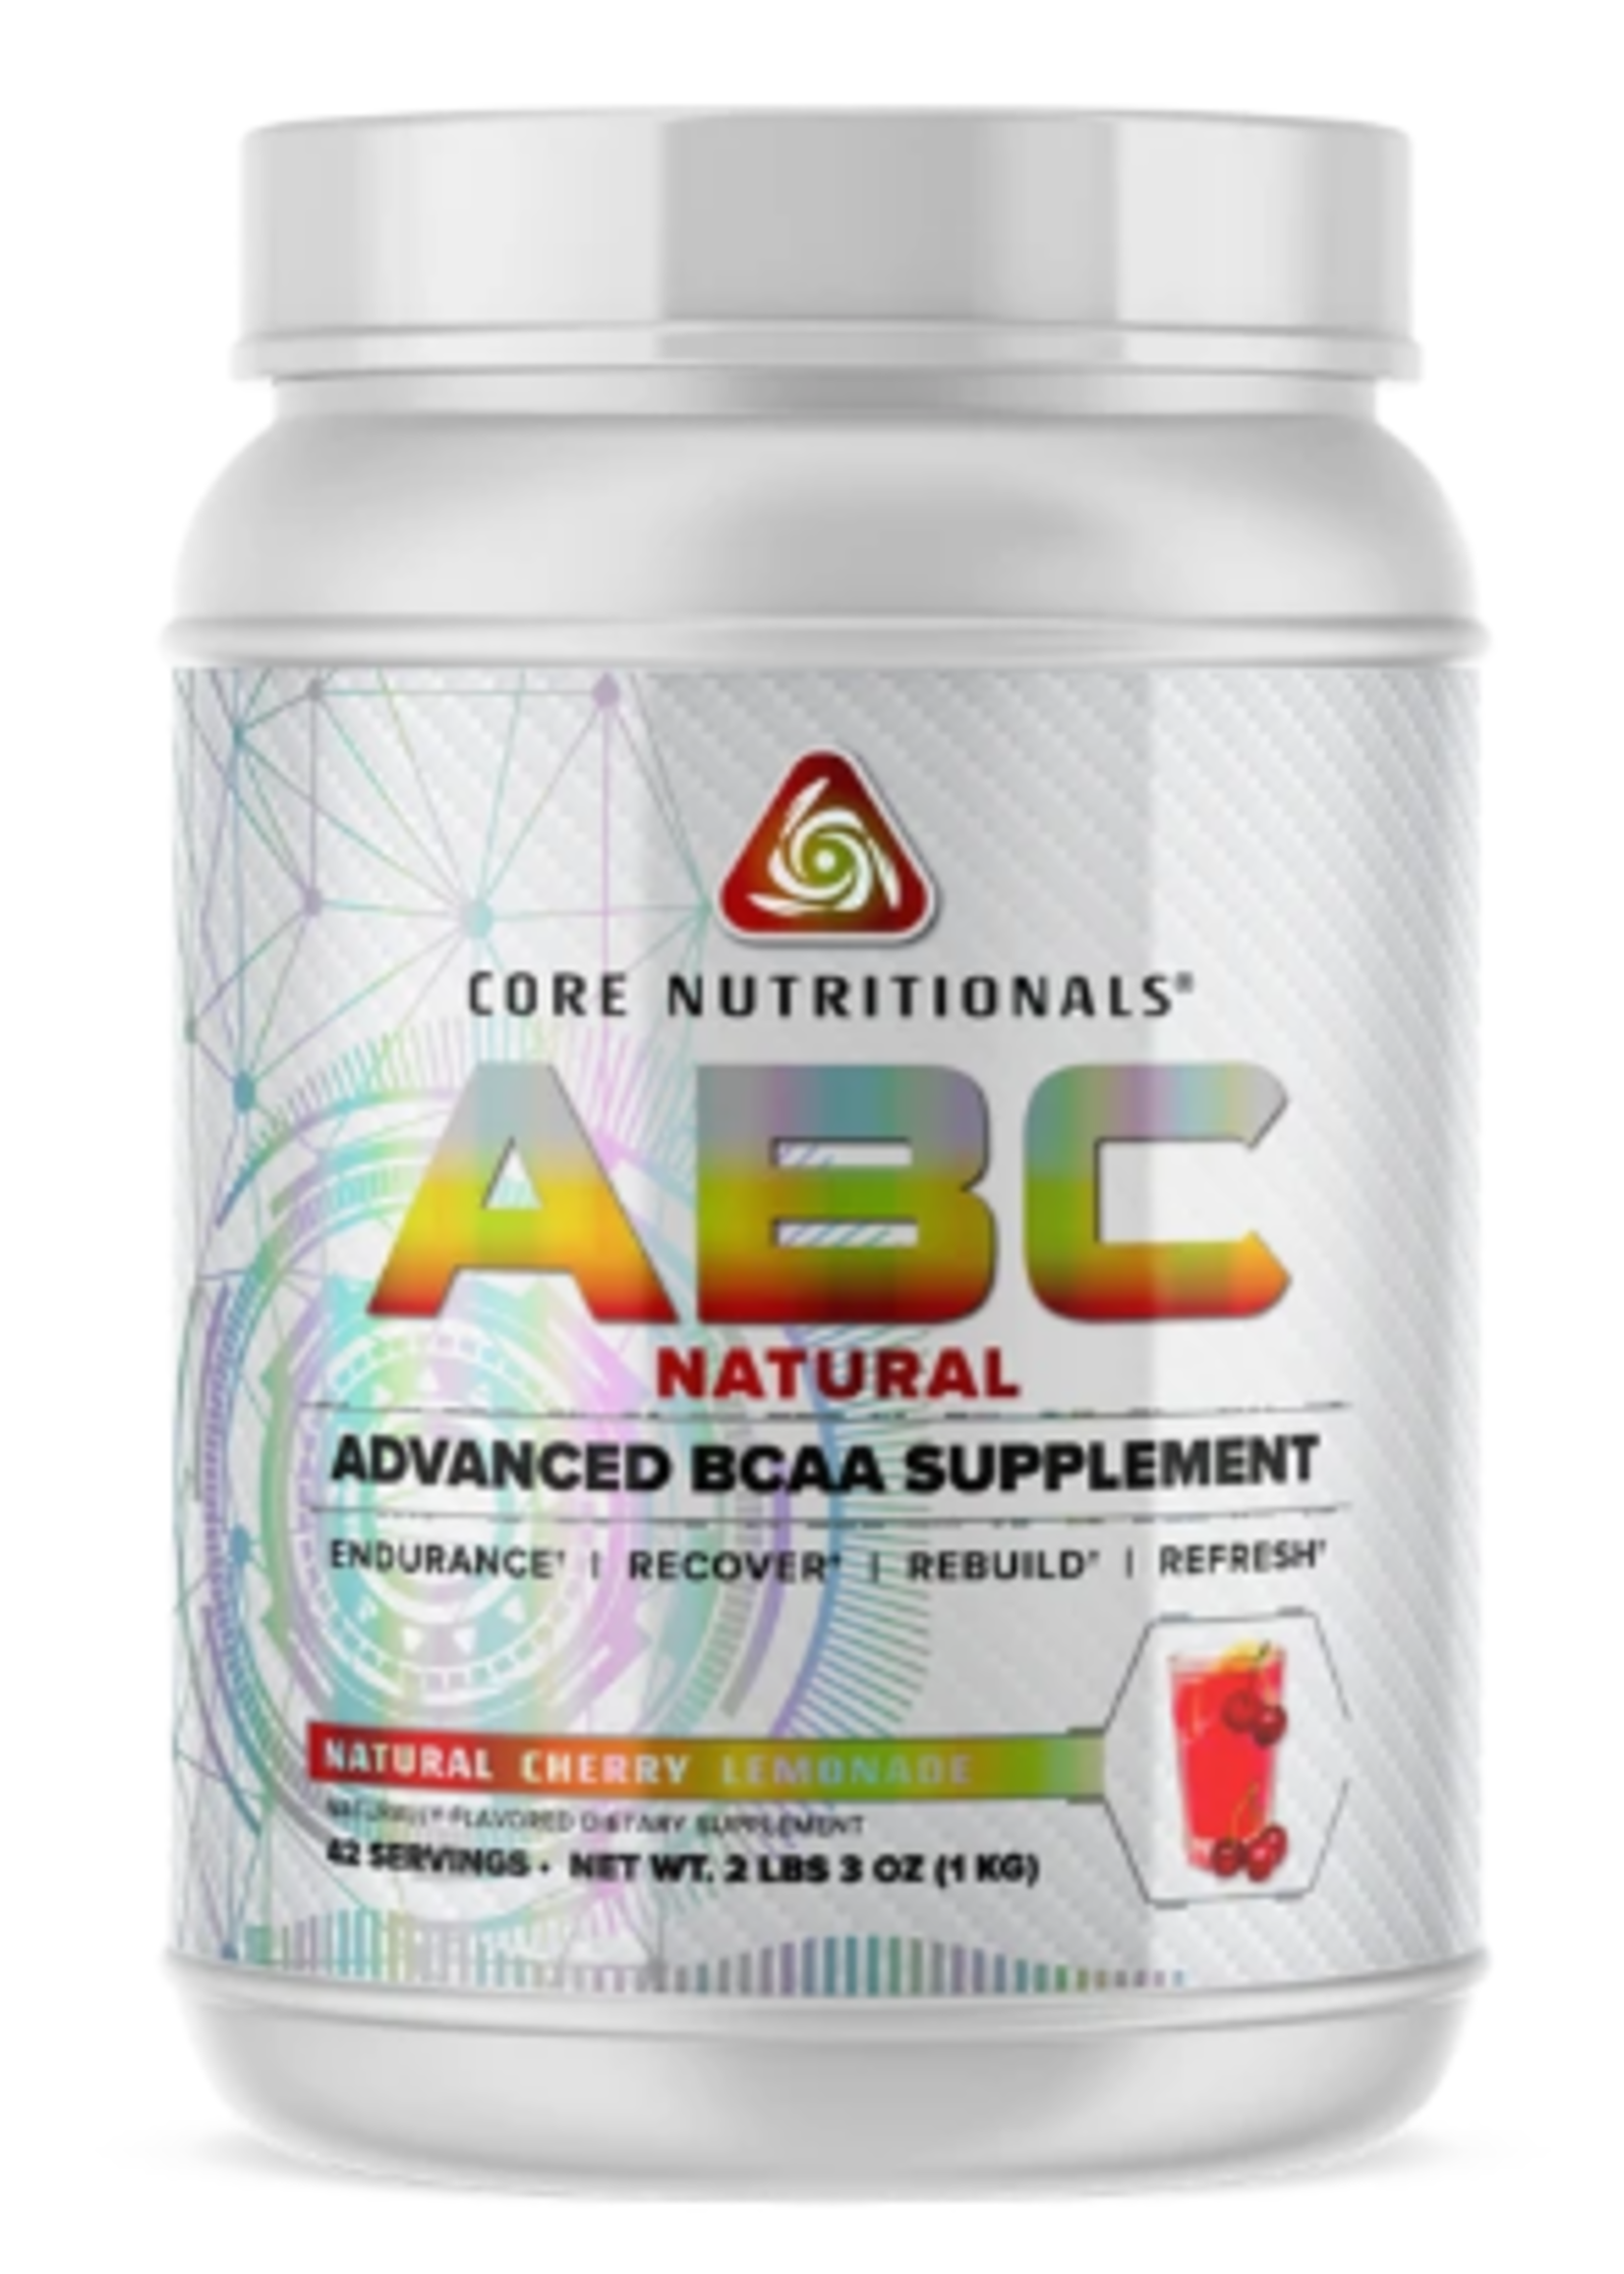 Core Nutritionals Core ABC